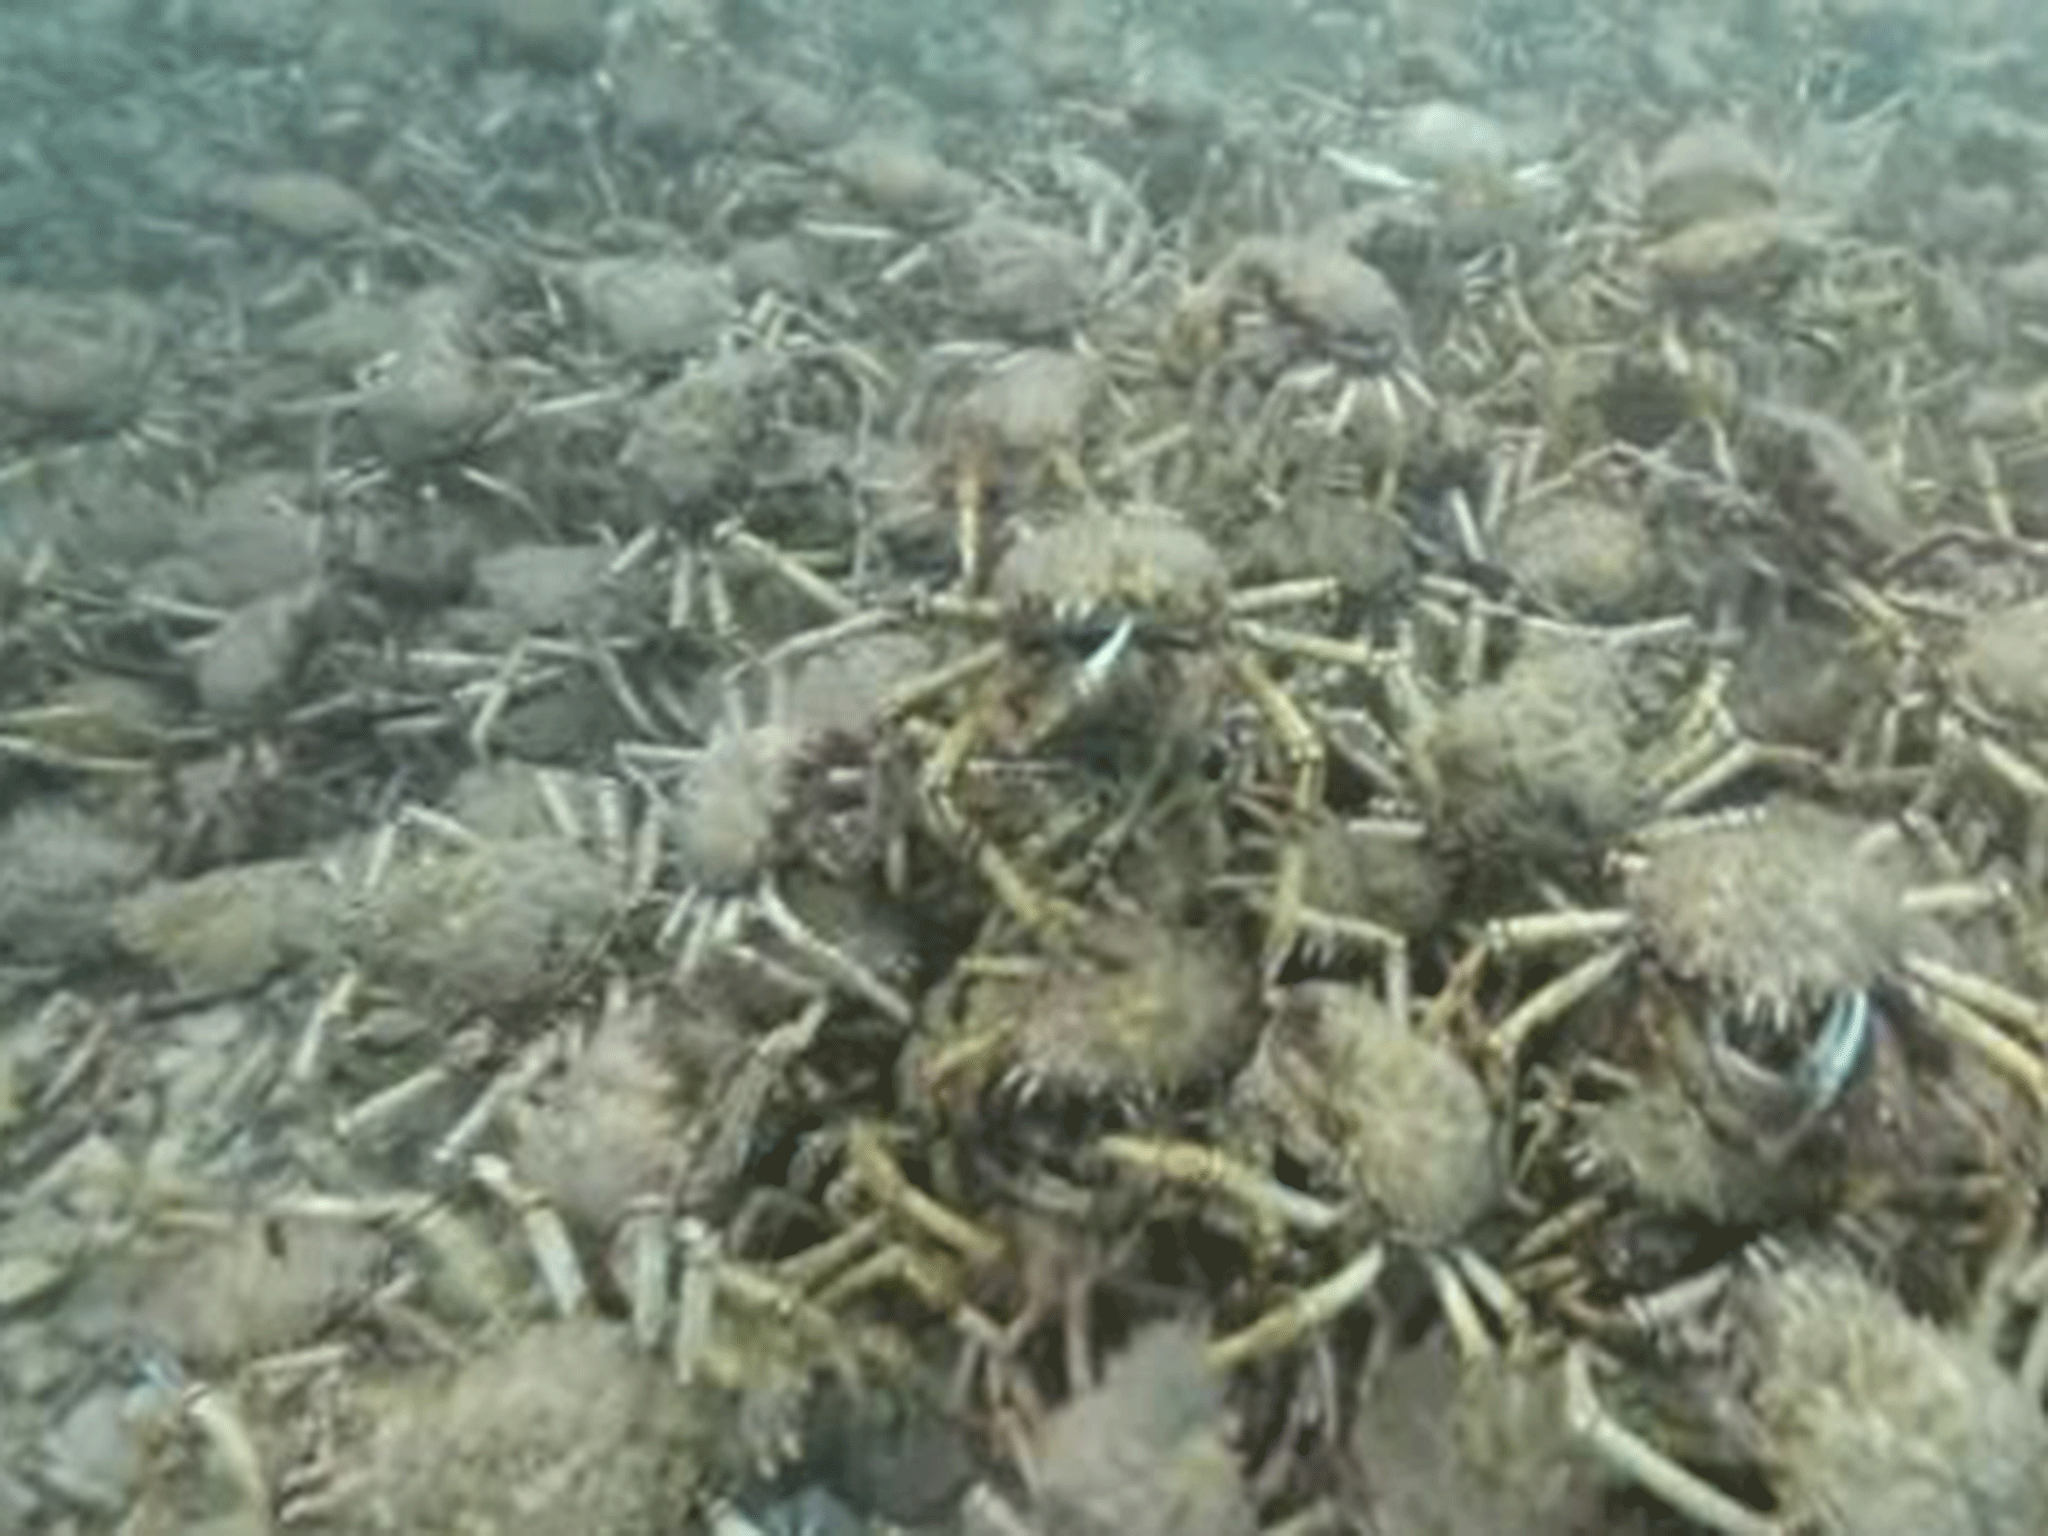 Crabs 3 